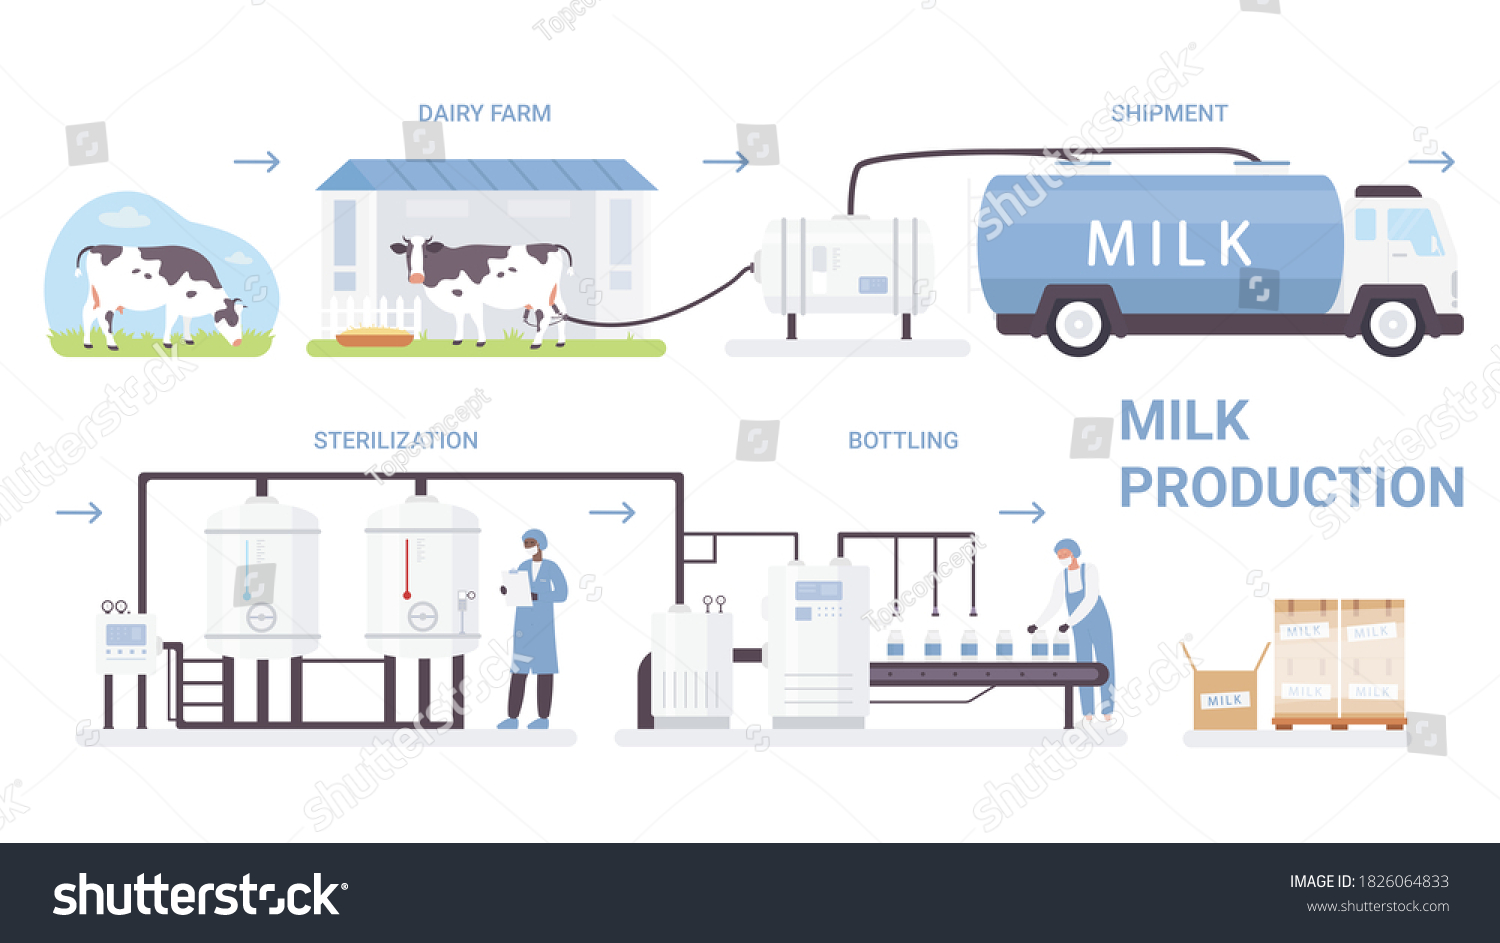 Milk Bottle Production Process Illustration Cartoon Stock Illustration ...